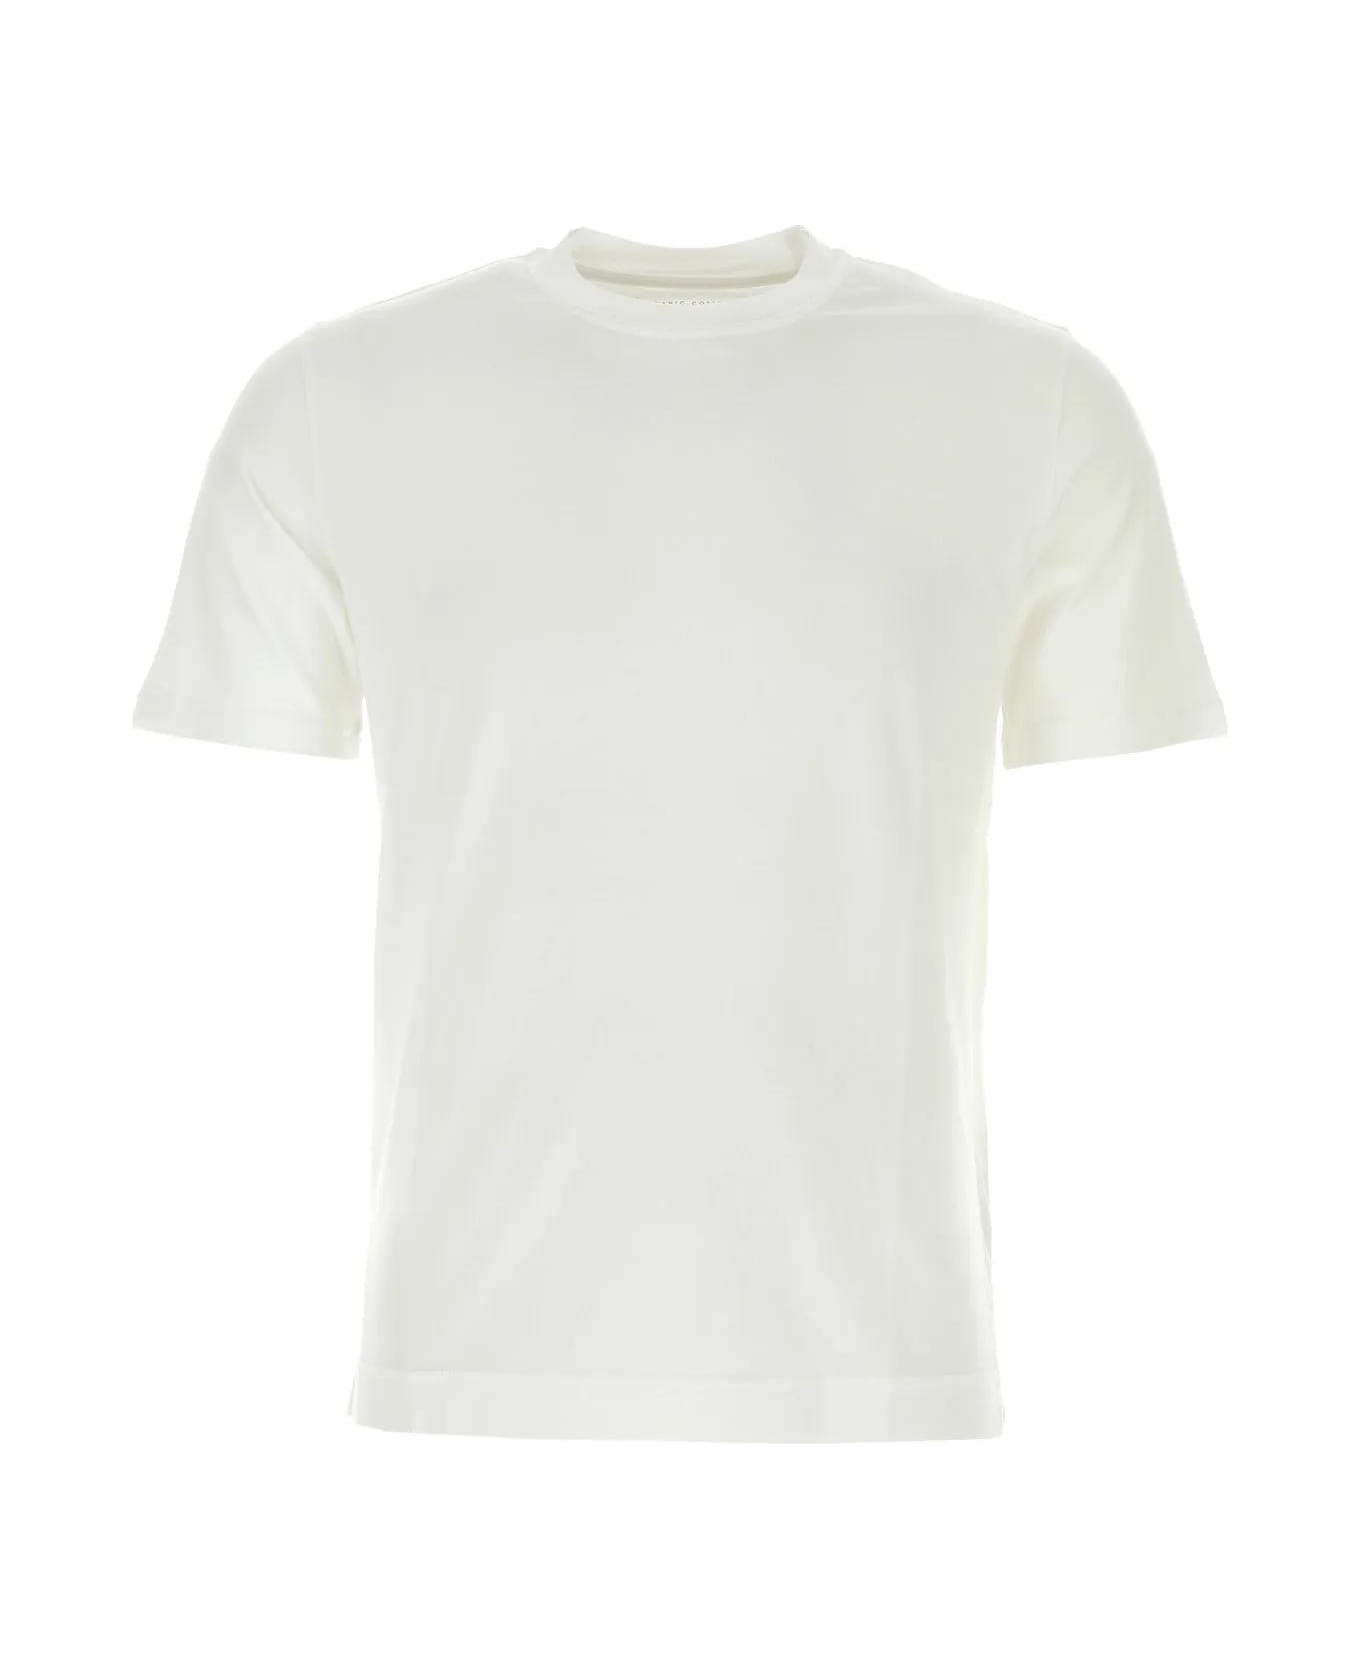 Fedeli White Cotton T-shirt - Bianco シャツ